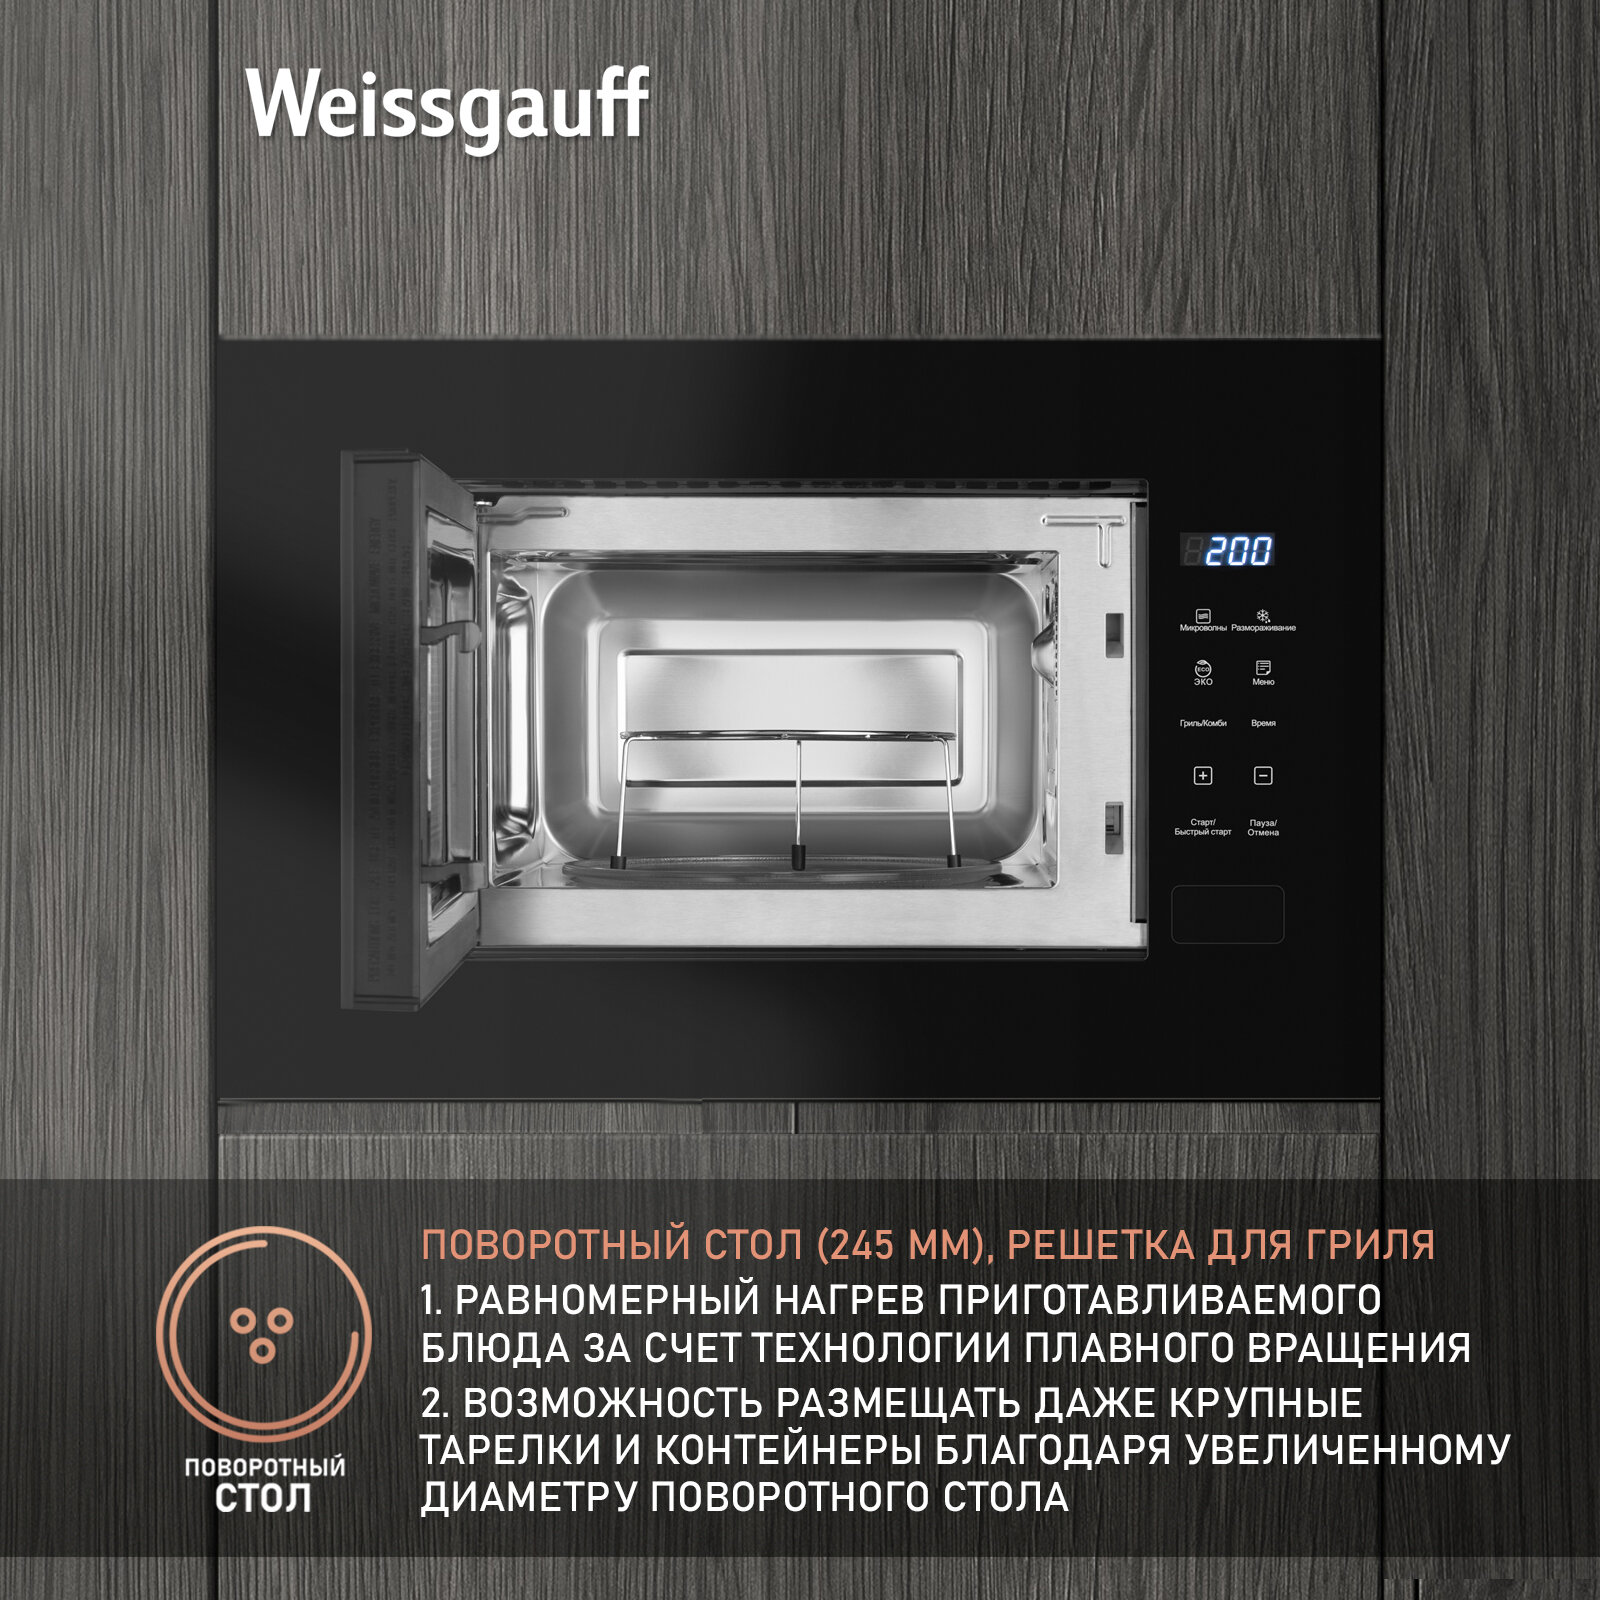 Встраиваемая микроволновая печь Weissgauff HMT-206 Compact Grill 3 года гарантии, объем 20 литров, гриль, разморозка по весу